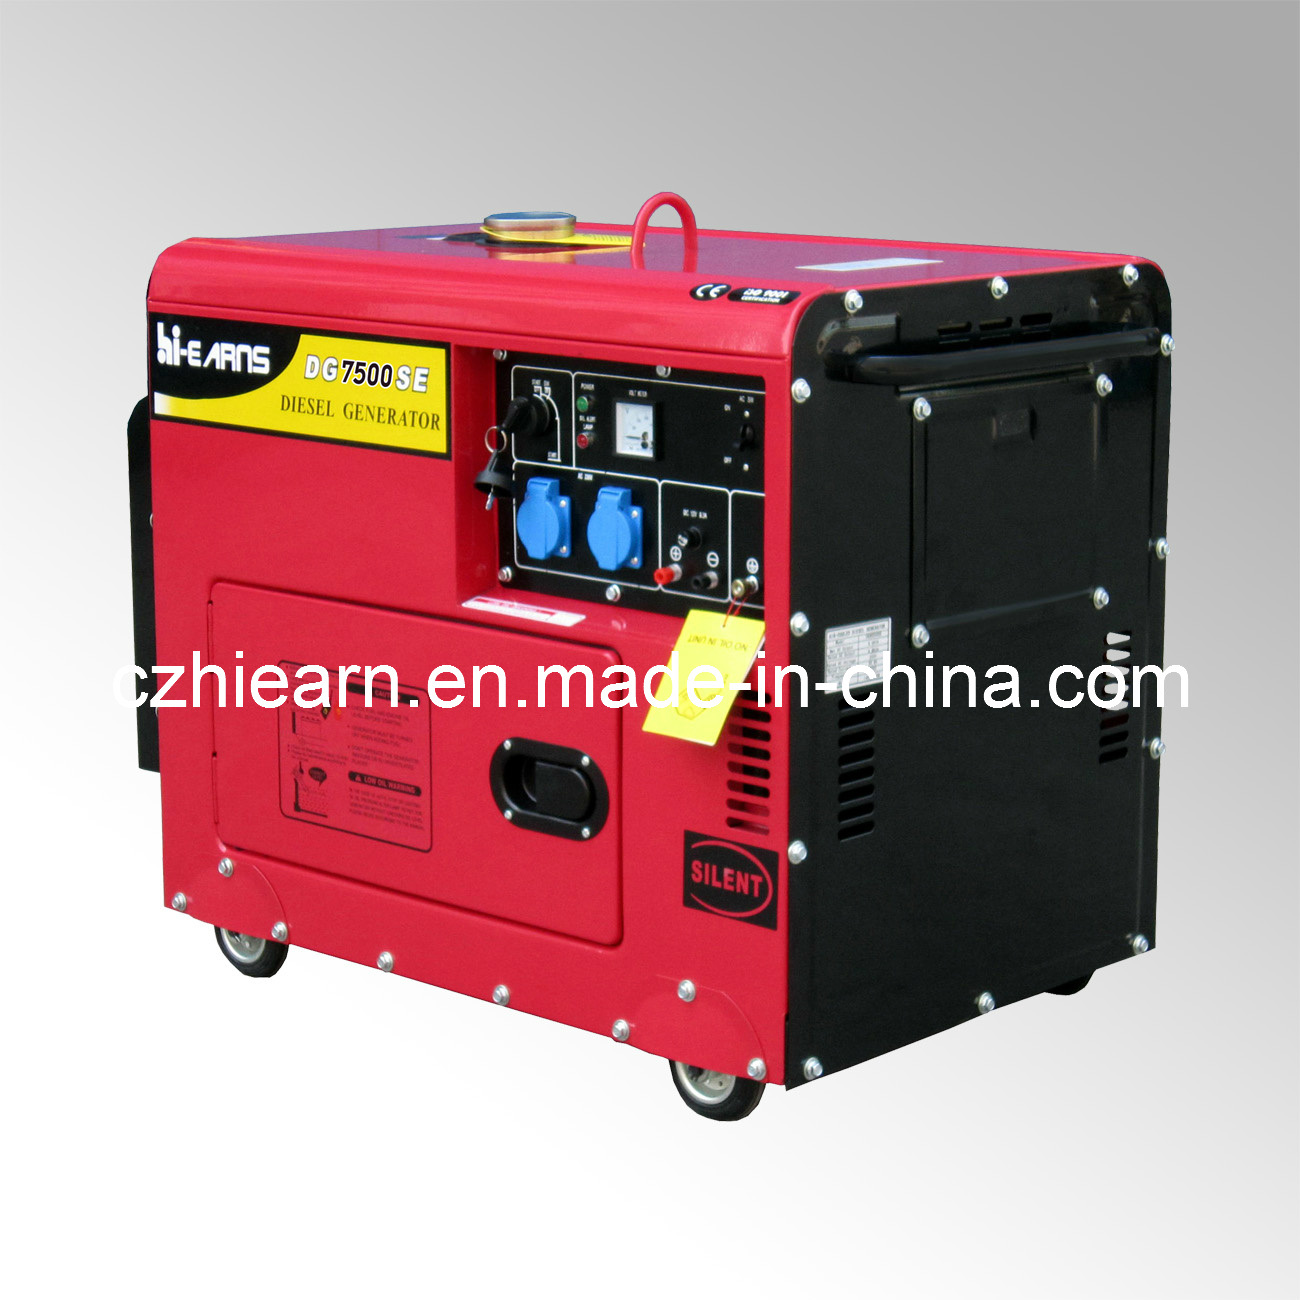 5.5kw Silent Red Color Diesel Generator (DG7500SE)